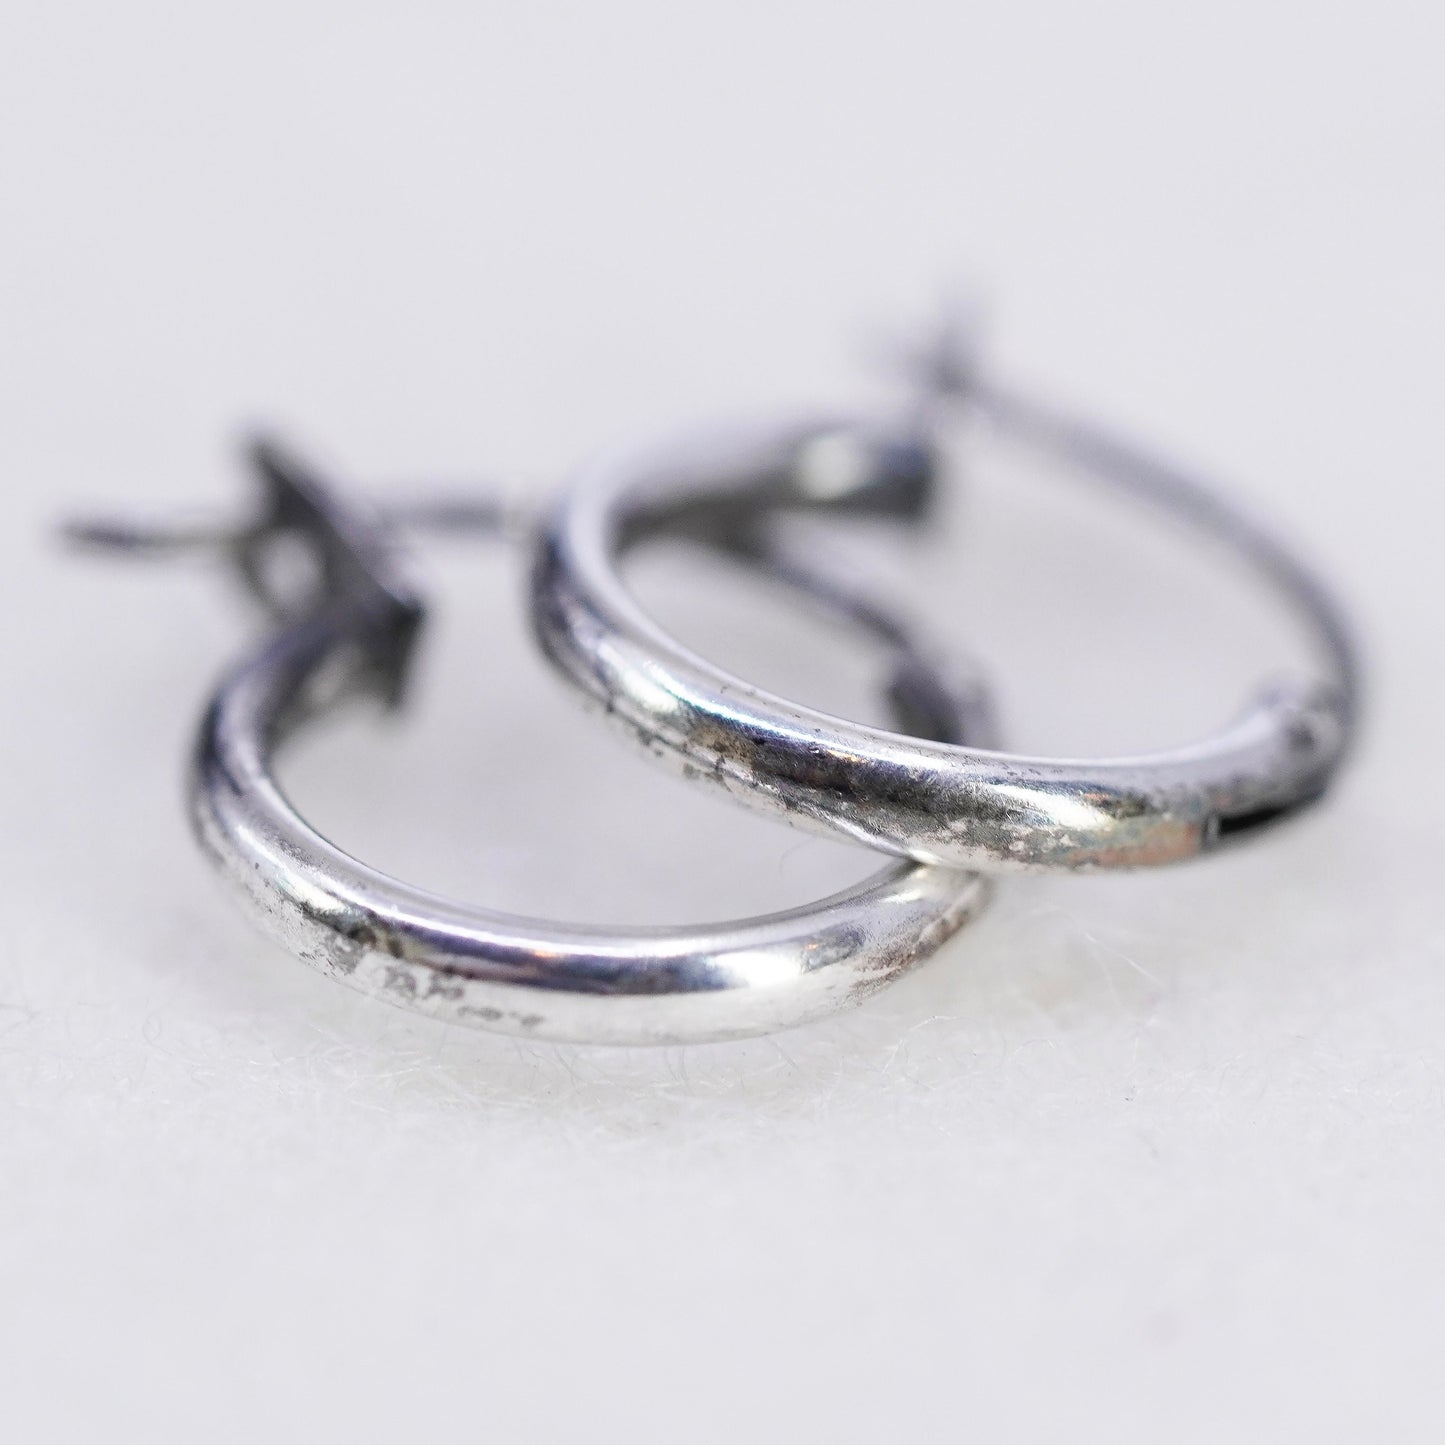 10mm, vintage Sterling silver handmade earrings, 925 hoops